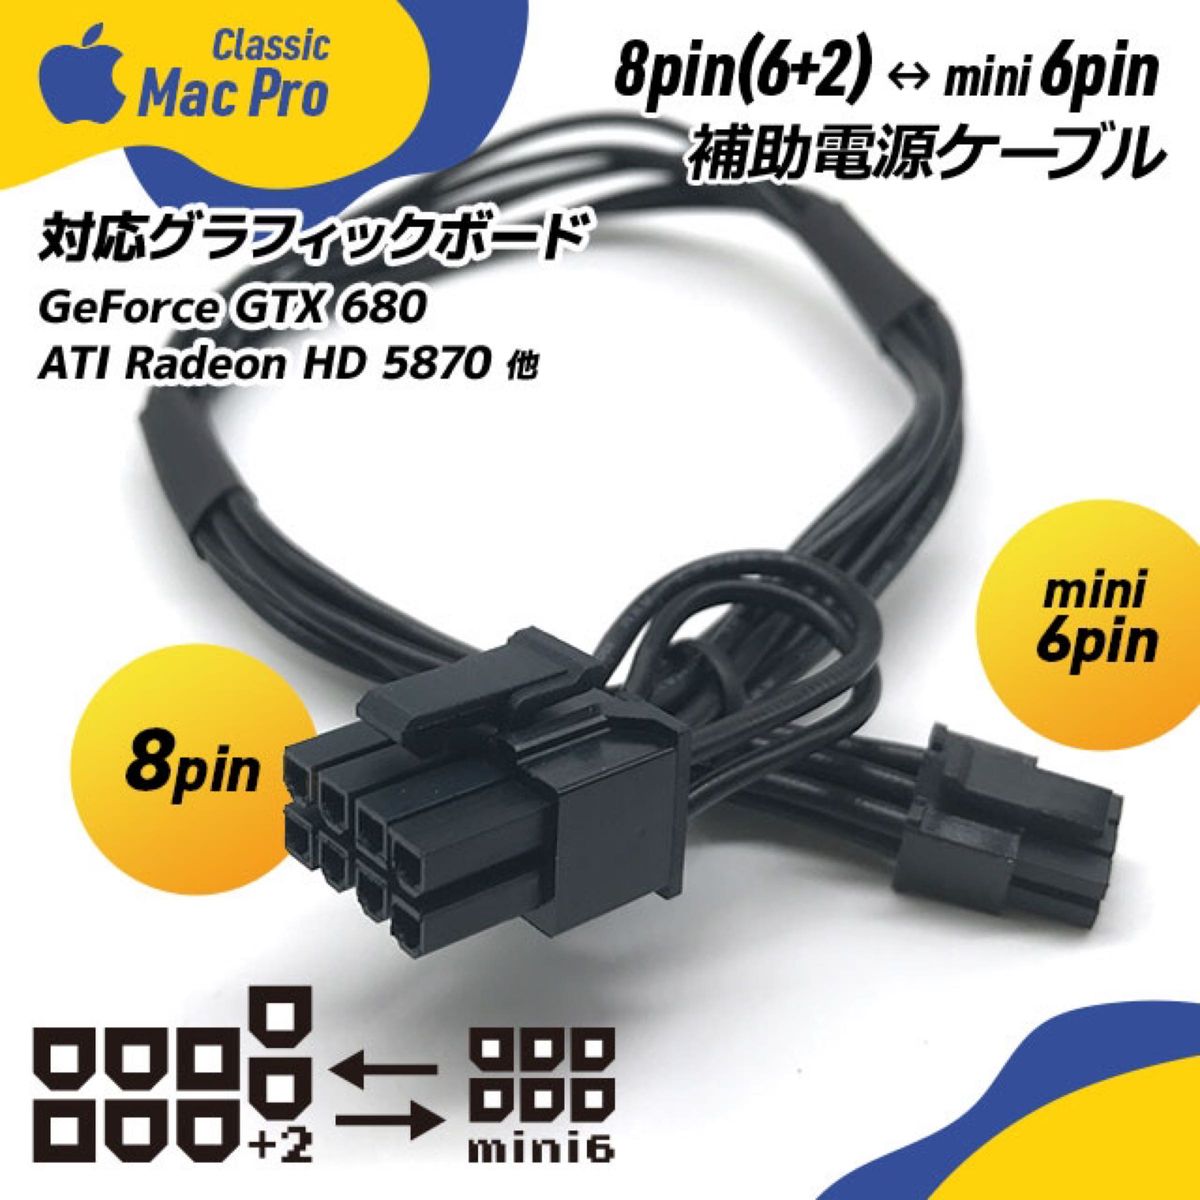 ビデオカード補助電源ケーブル 8ピン（6+2ピン）ー ミニ6ピン Mac Pro